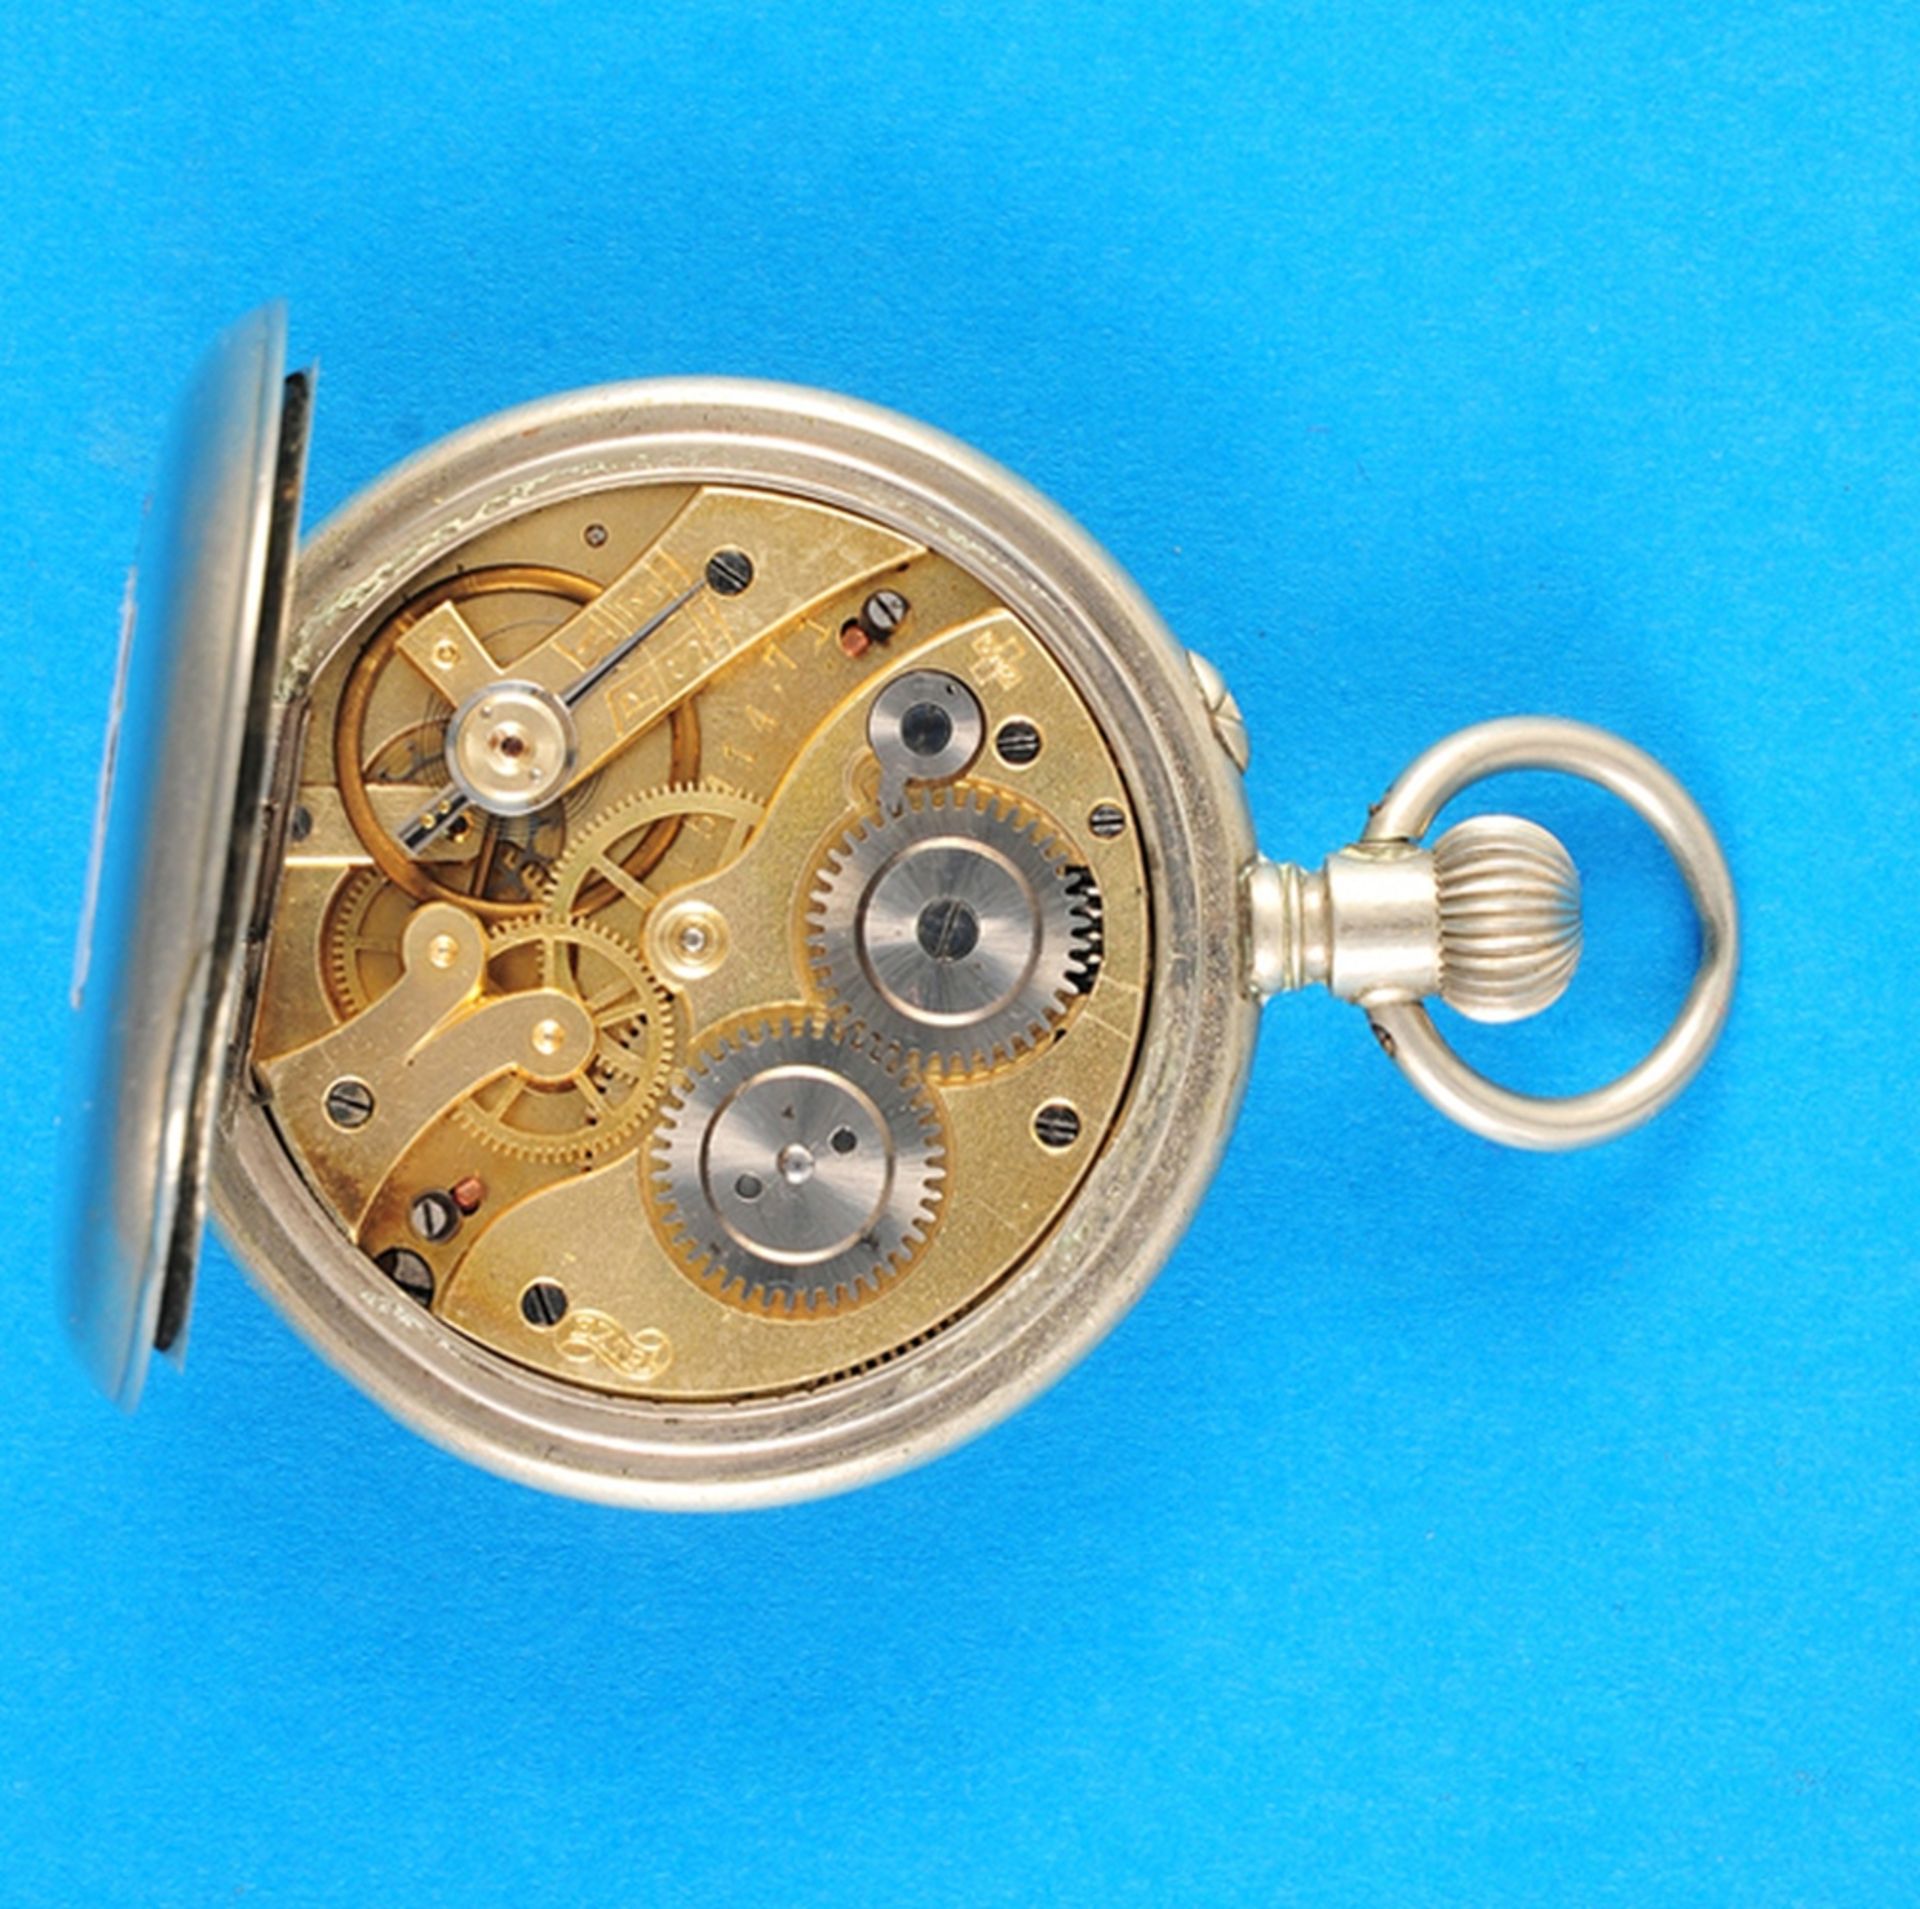 Metal pocket watch, trademark "Extra" - Bild 2 aus 2